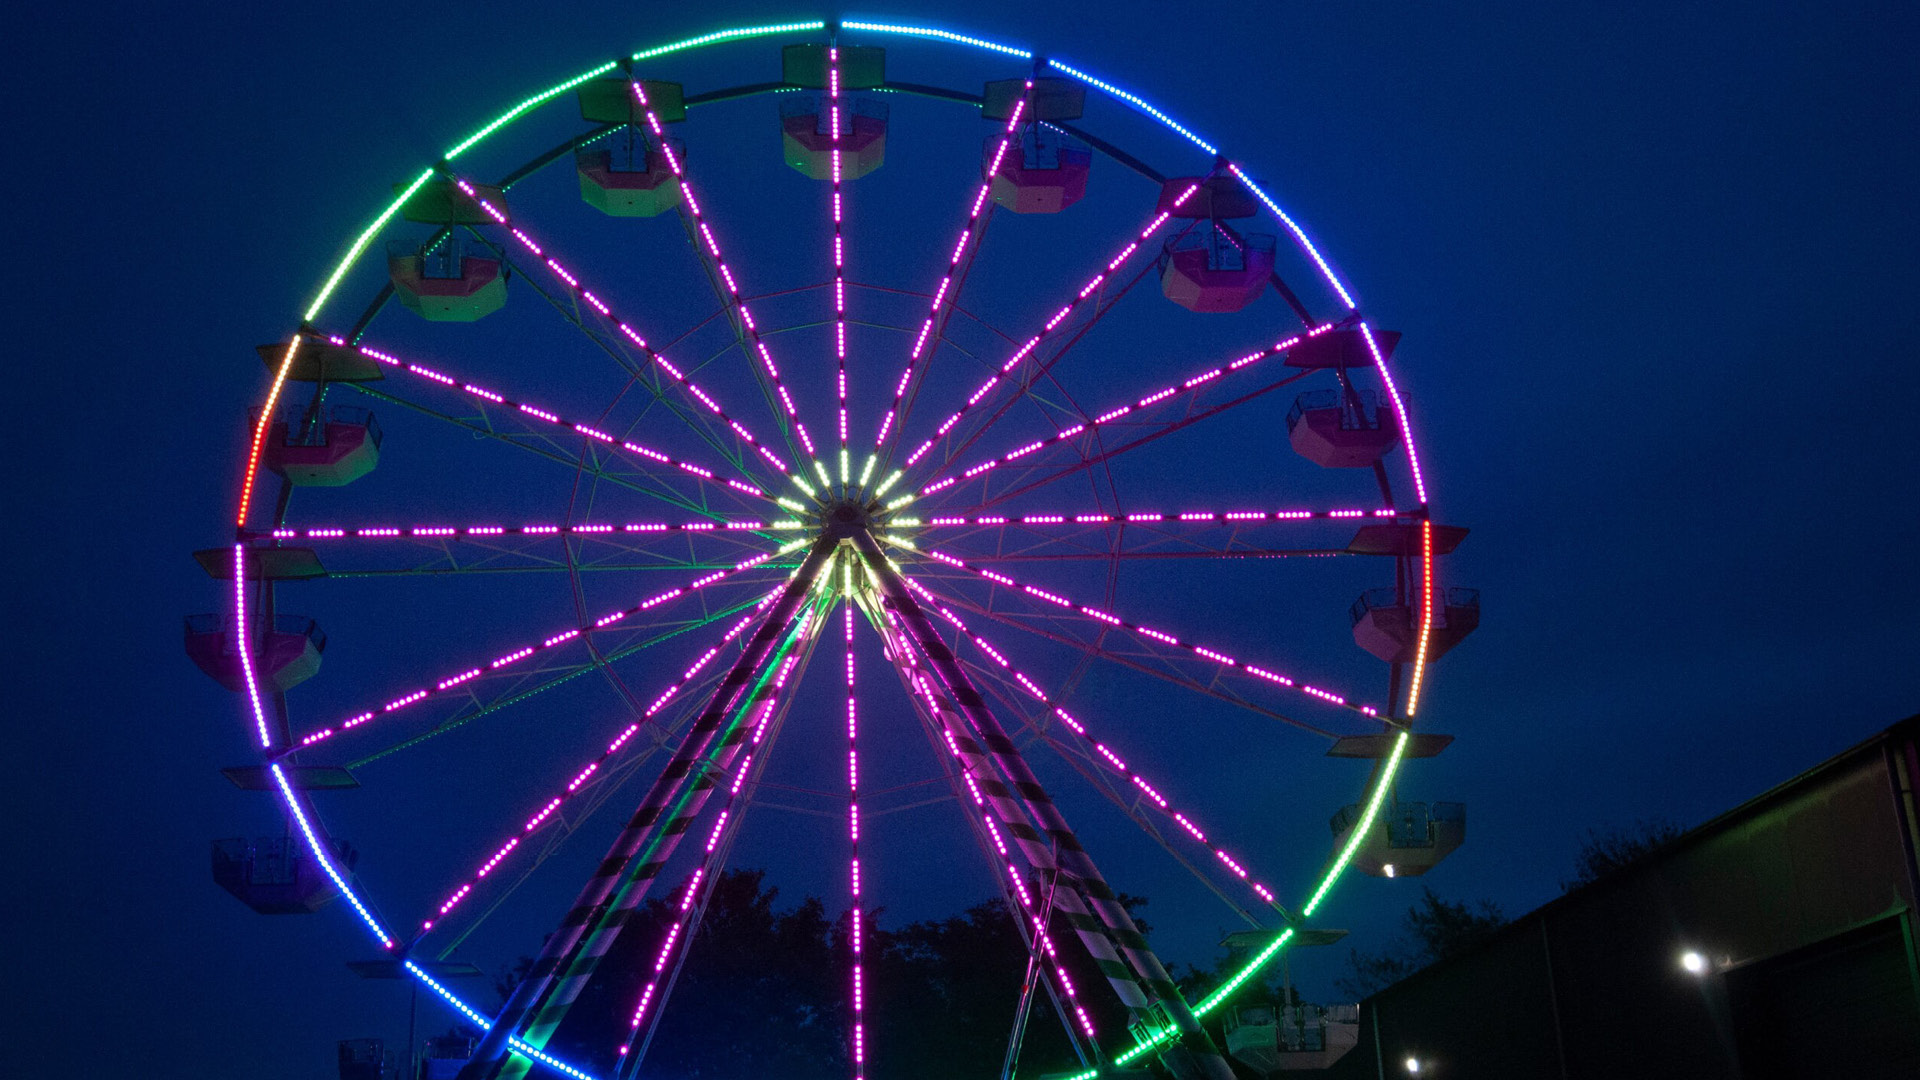 La grande roue illuminée de nuit.